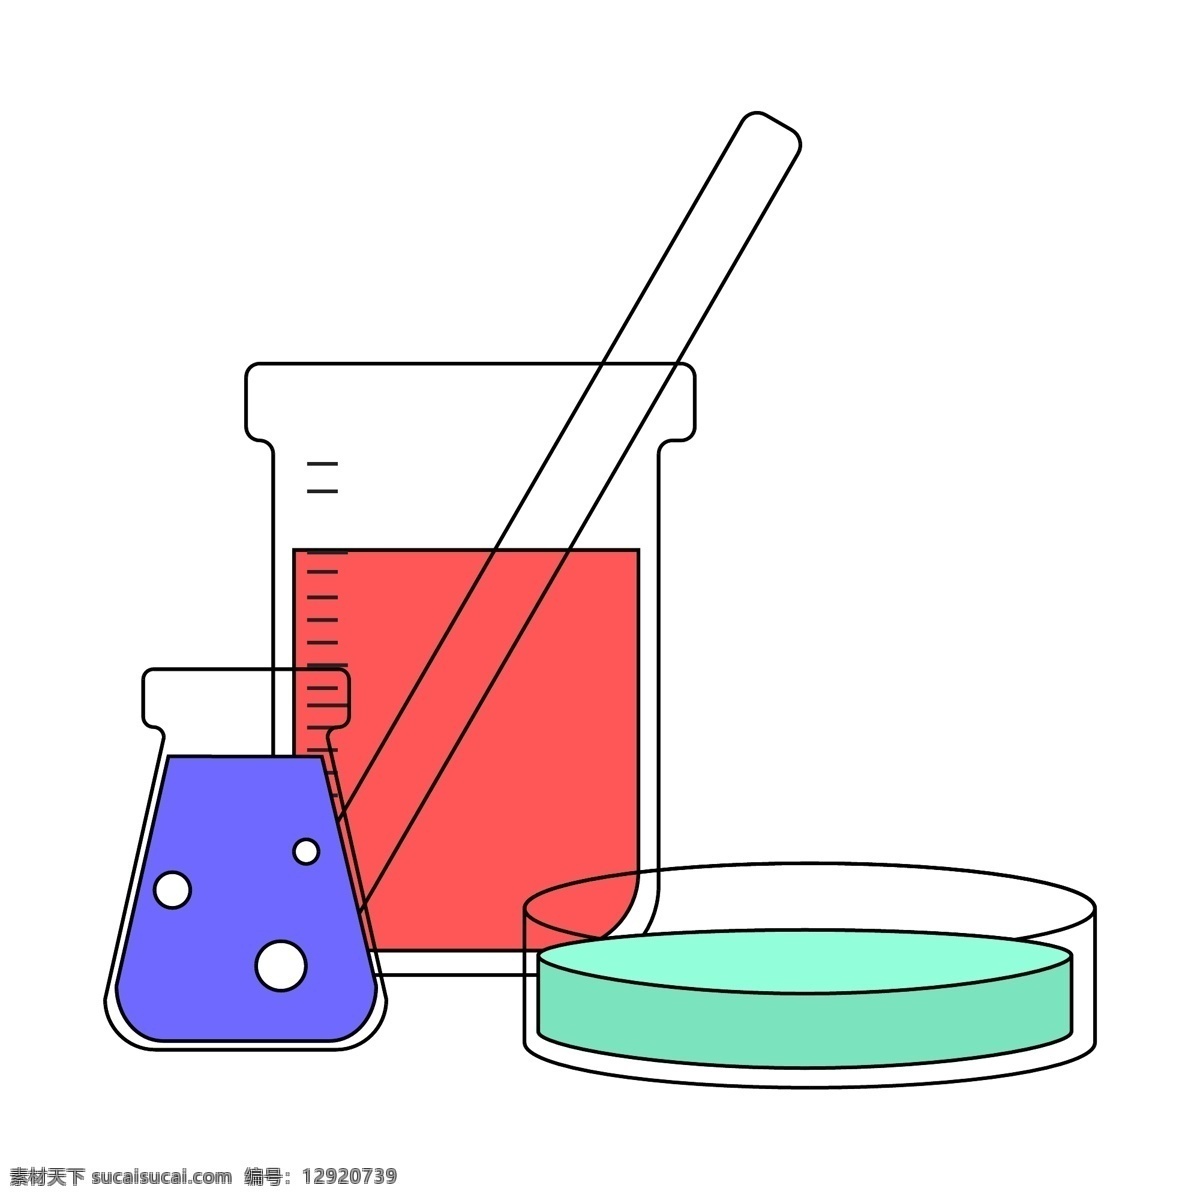 化学实验 烧杯 插画 烧杯插画 锥形瓶 卡通器材插画 化学器材 实验用品插画 卡通化学用品 器材插画